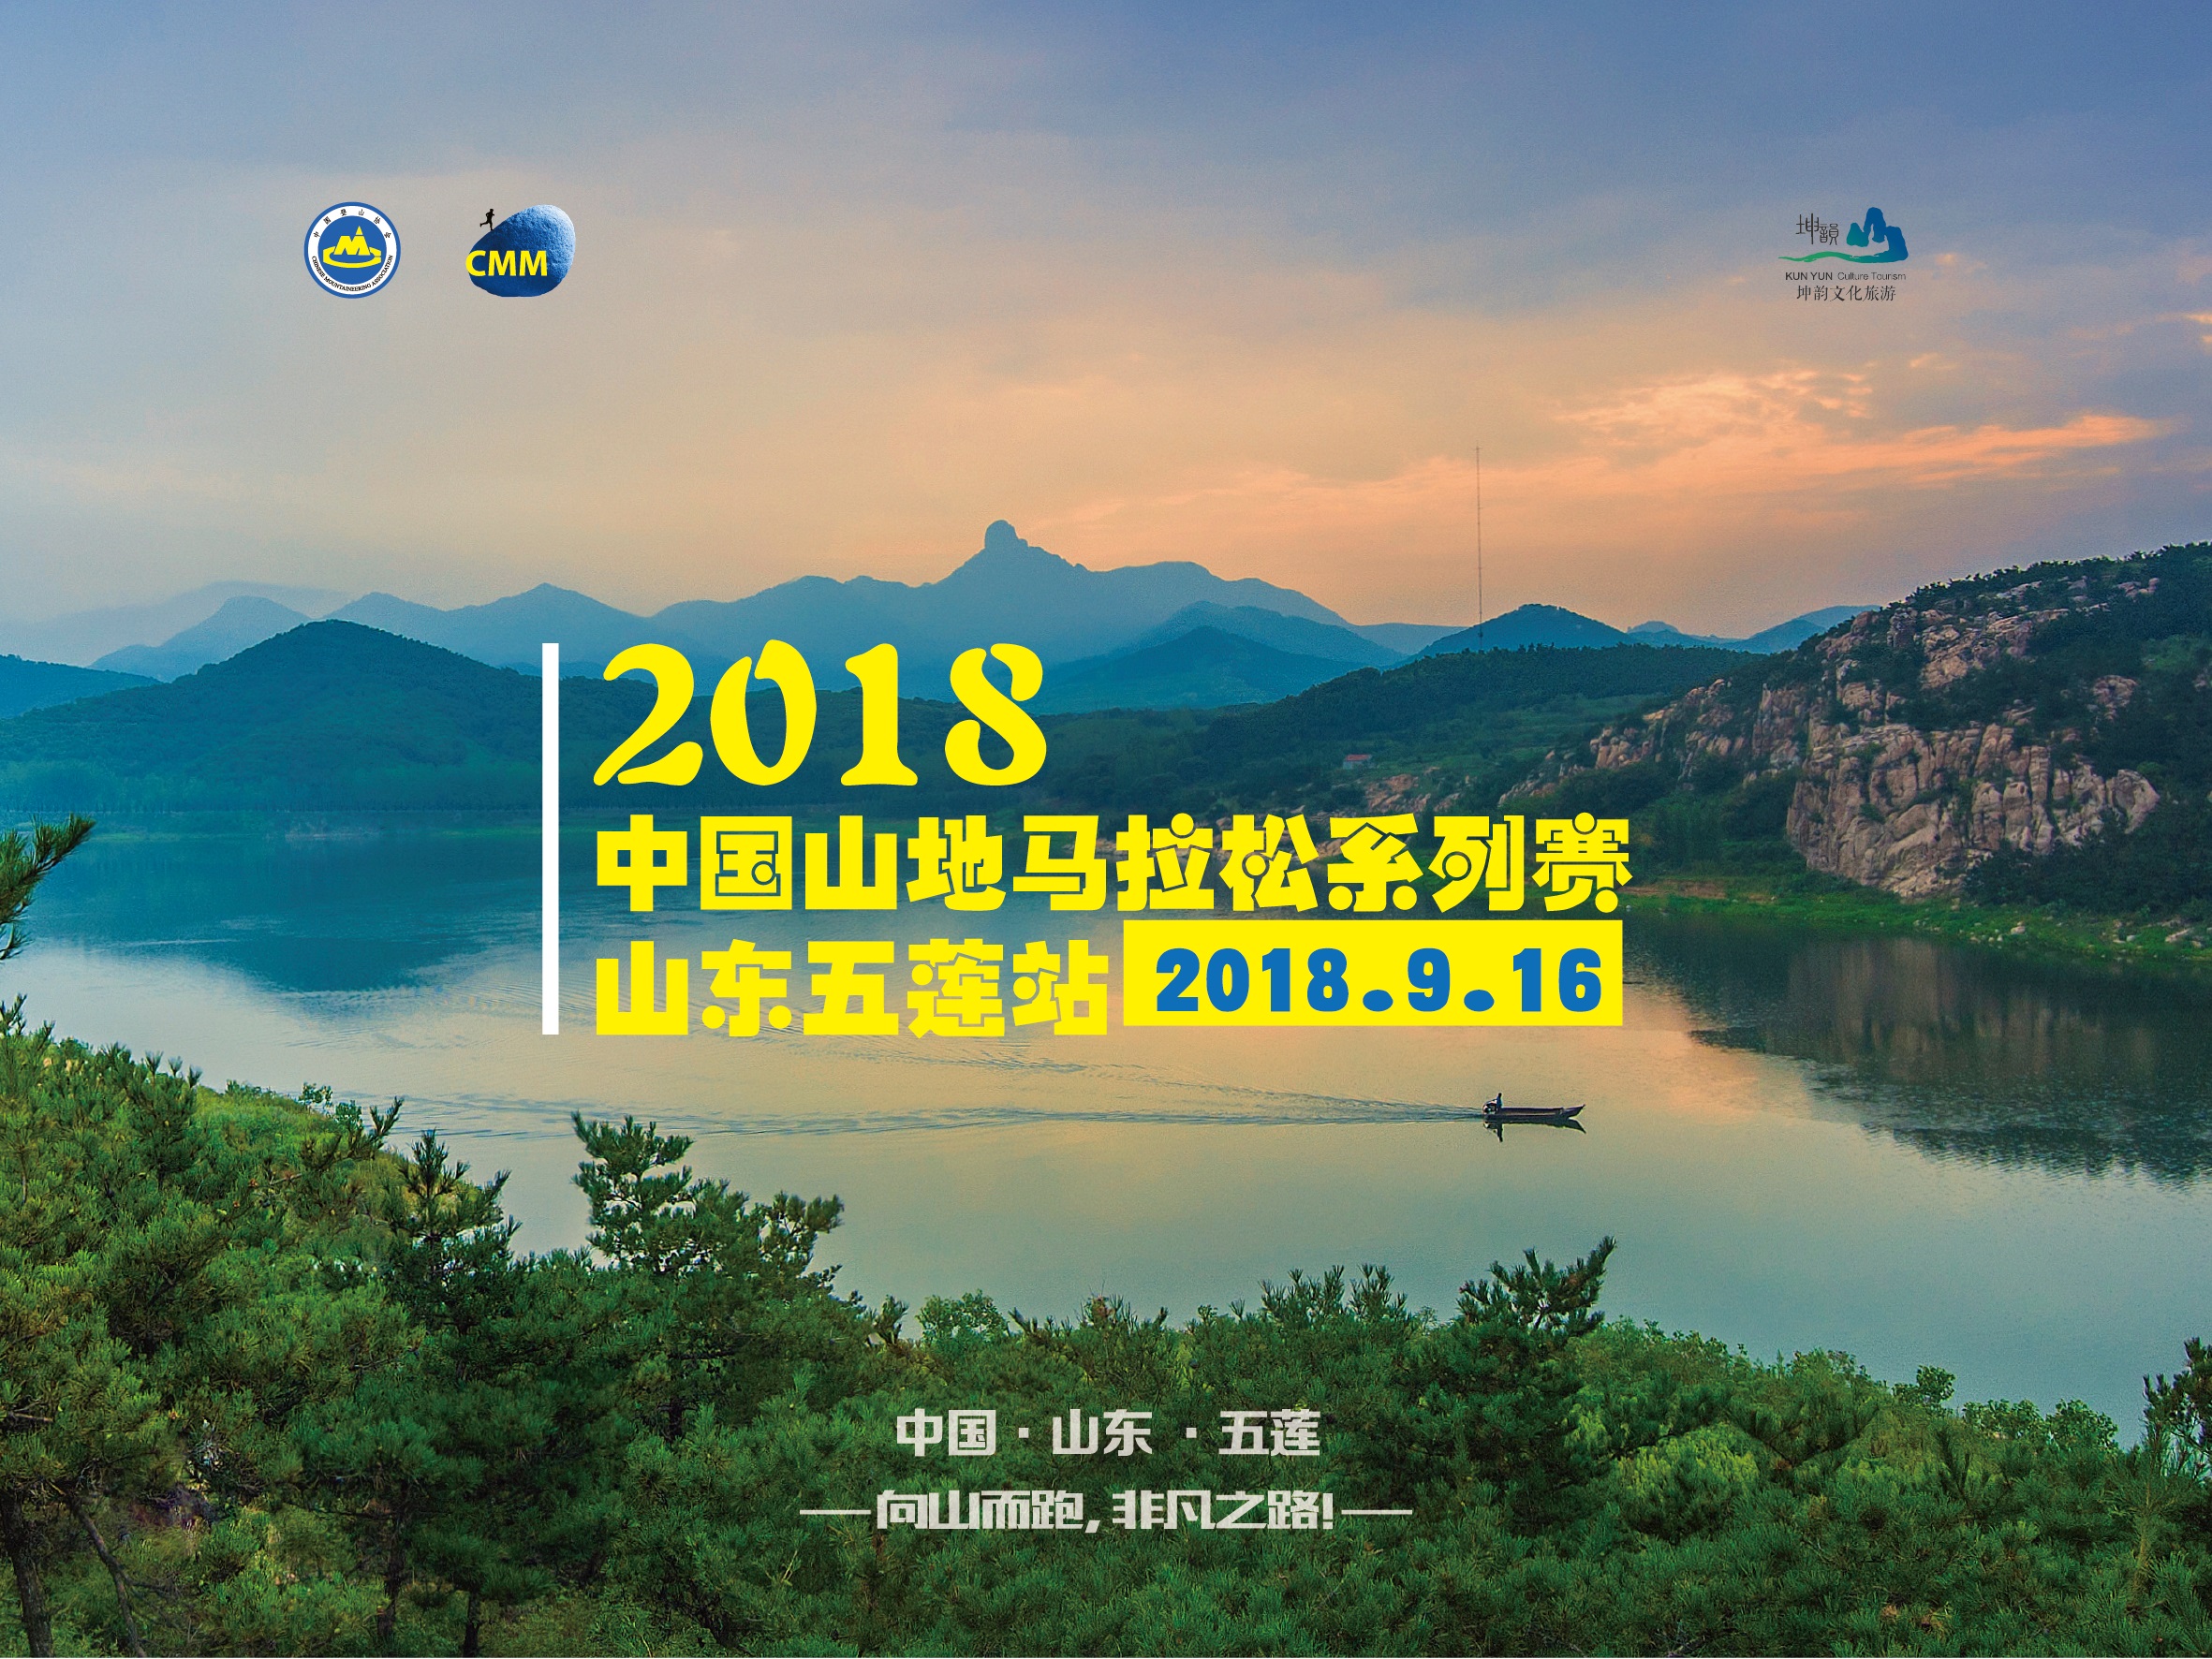 2018中国山地马拉松系列赛-山东五莲站